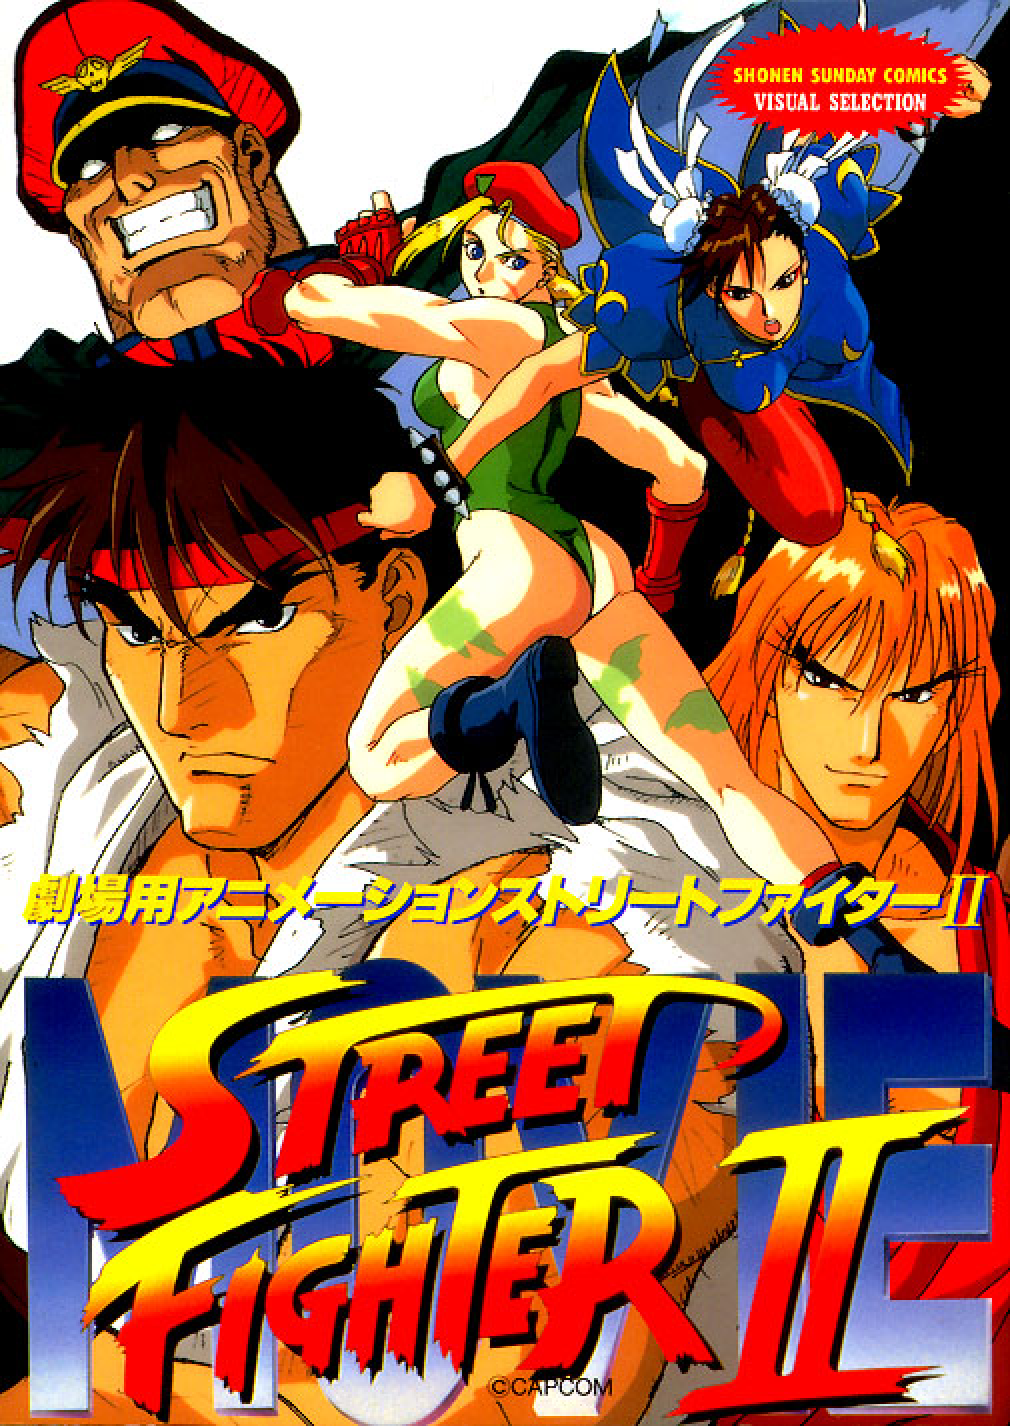 Street Fighter 2 Movie Cammy 01 by jecolandia on DeviantArt